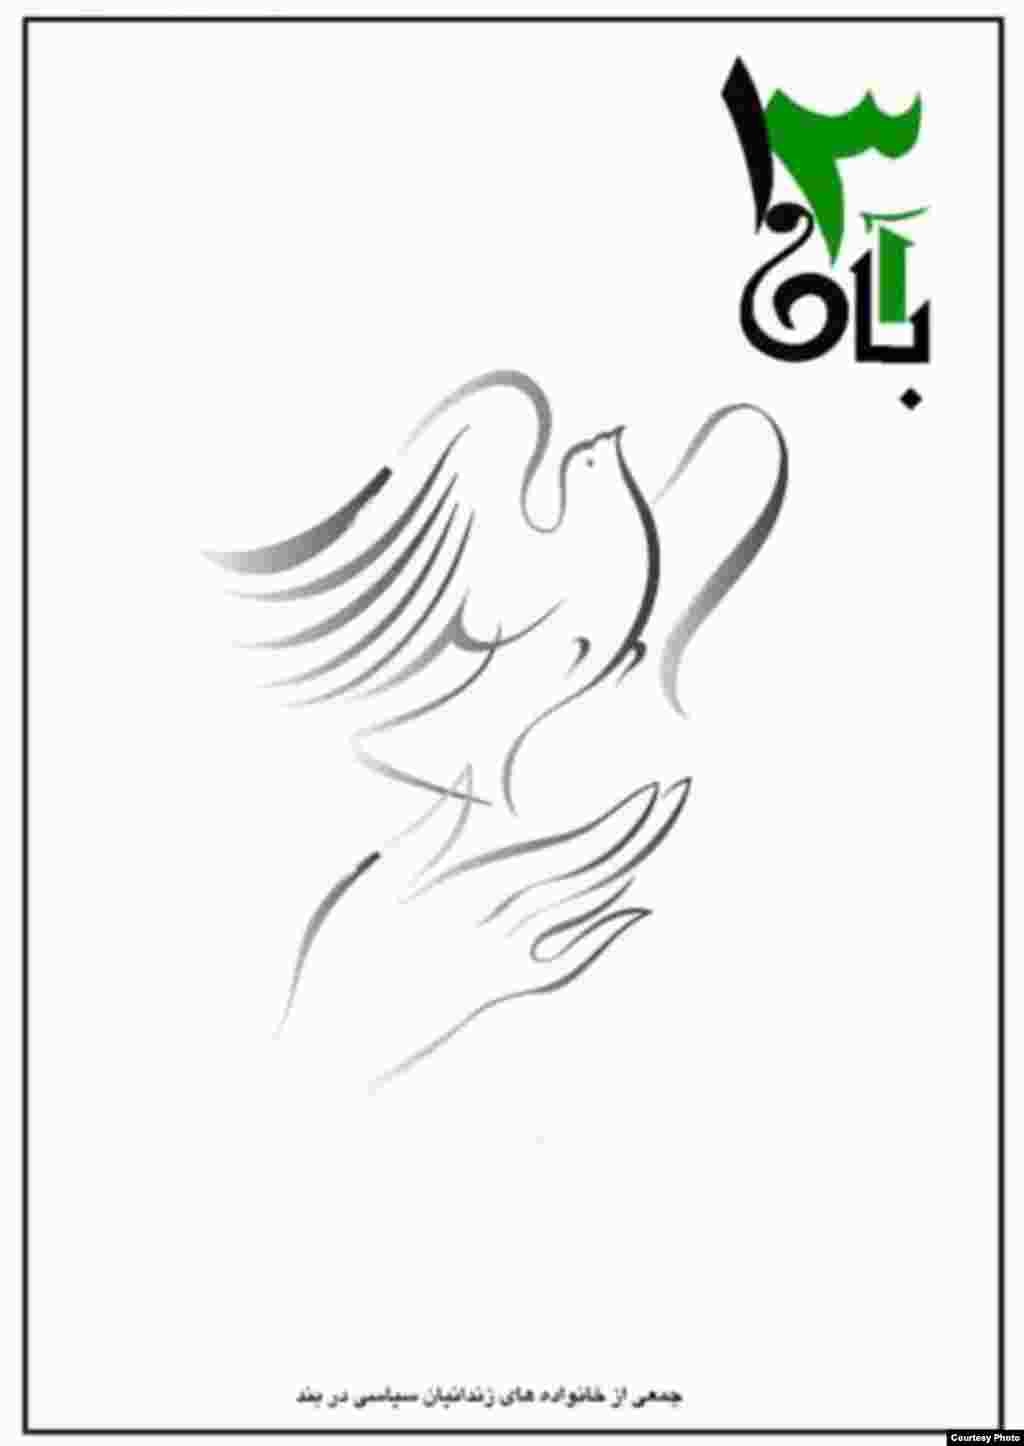 میرحسین موسوی، از رهبران جنبش سبز ایران، 13 آبان را سبزترین روز سال خواند، روزی که به گفته وی یادآور آن است که «مردم رهبران ما هستند». به دنبال این فراخوان هنرمندان هم‌صدا با جنبش سبز دست به طراحی پوسترهایی برای این «سبزترین روز سال» زدند.